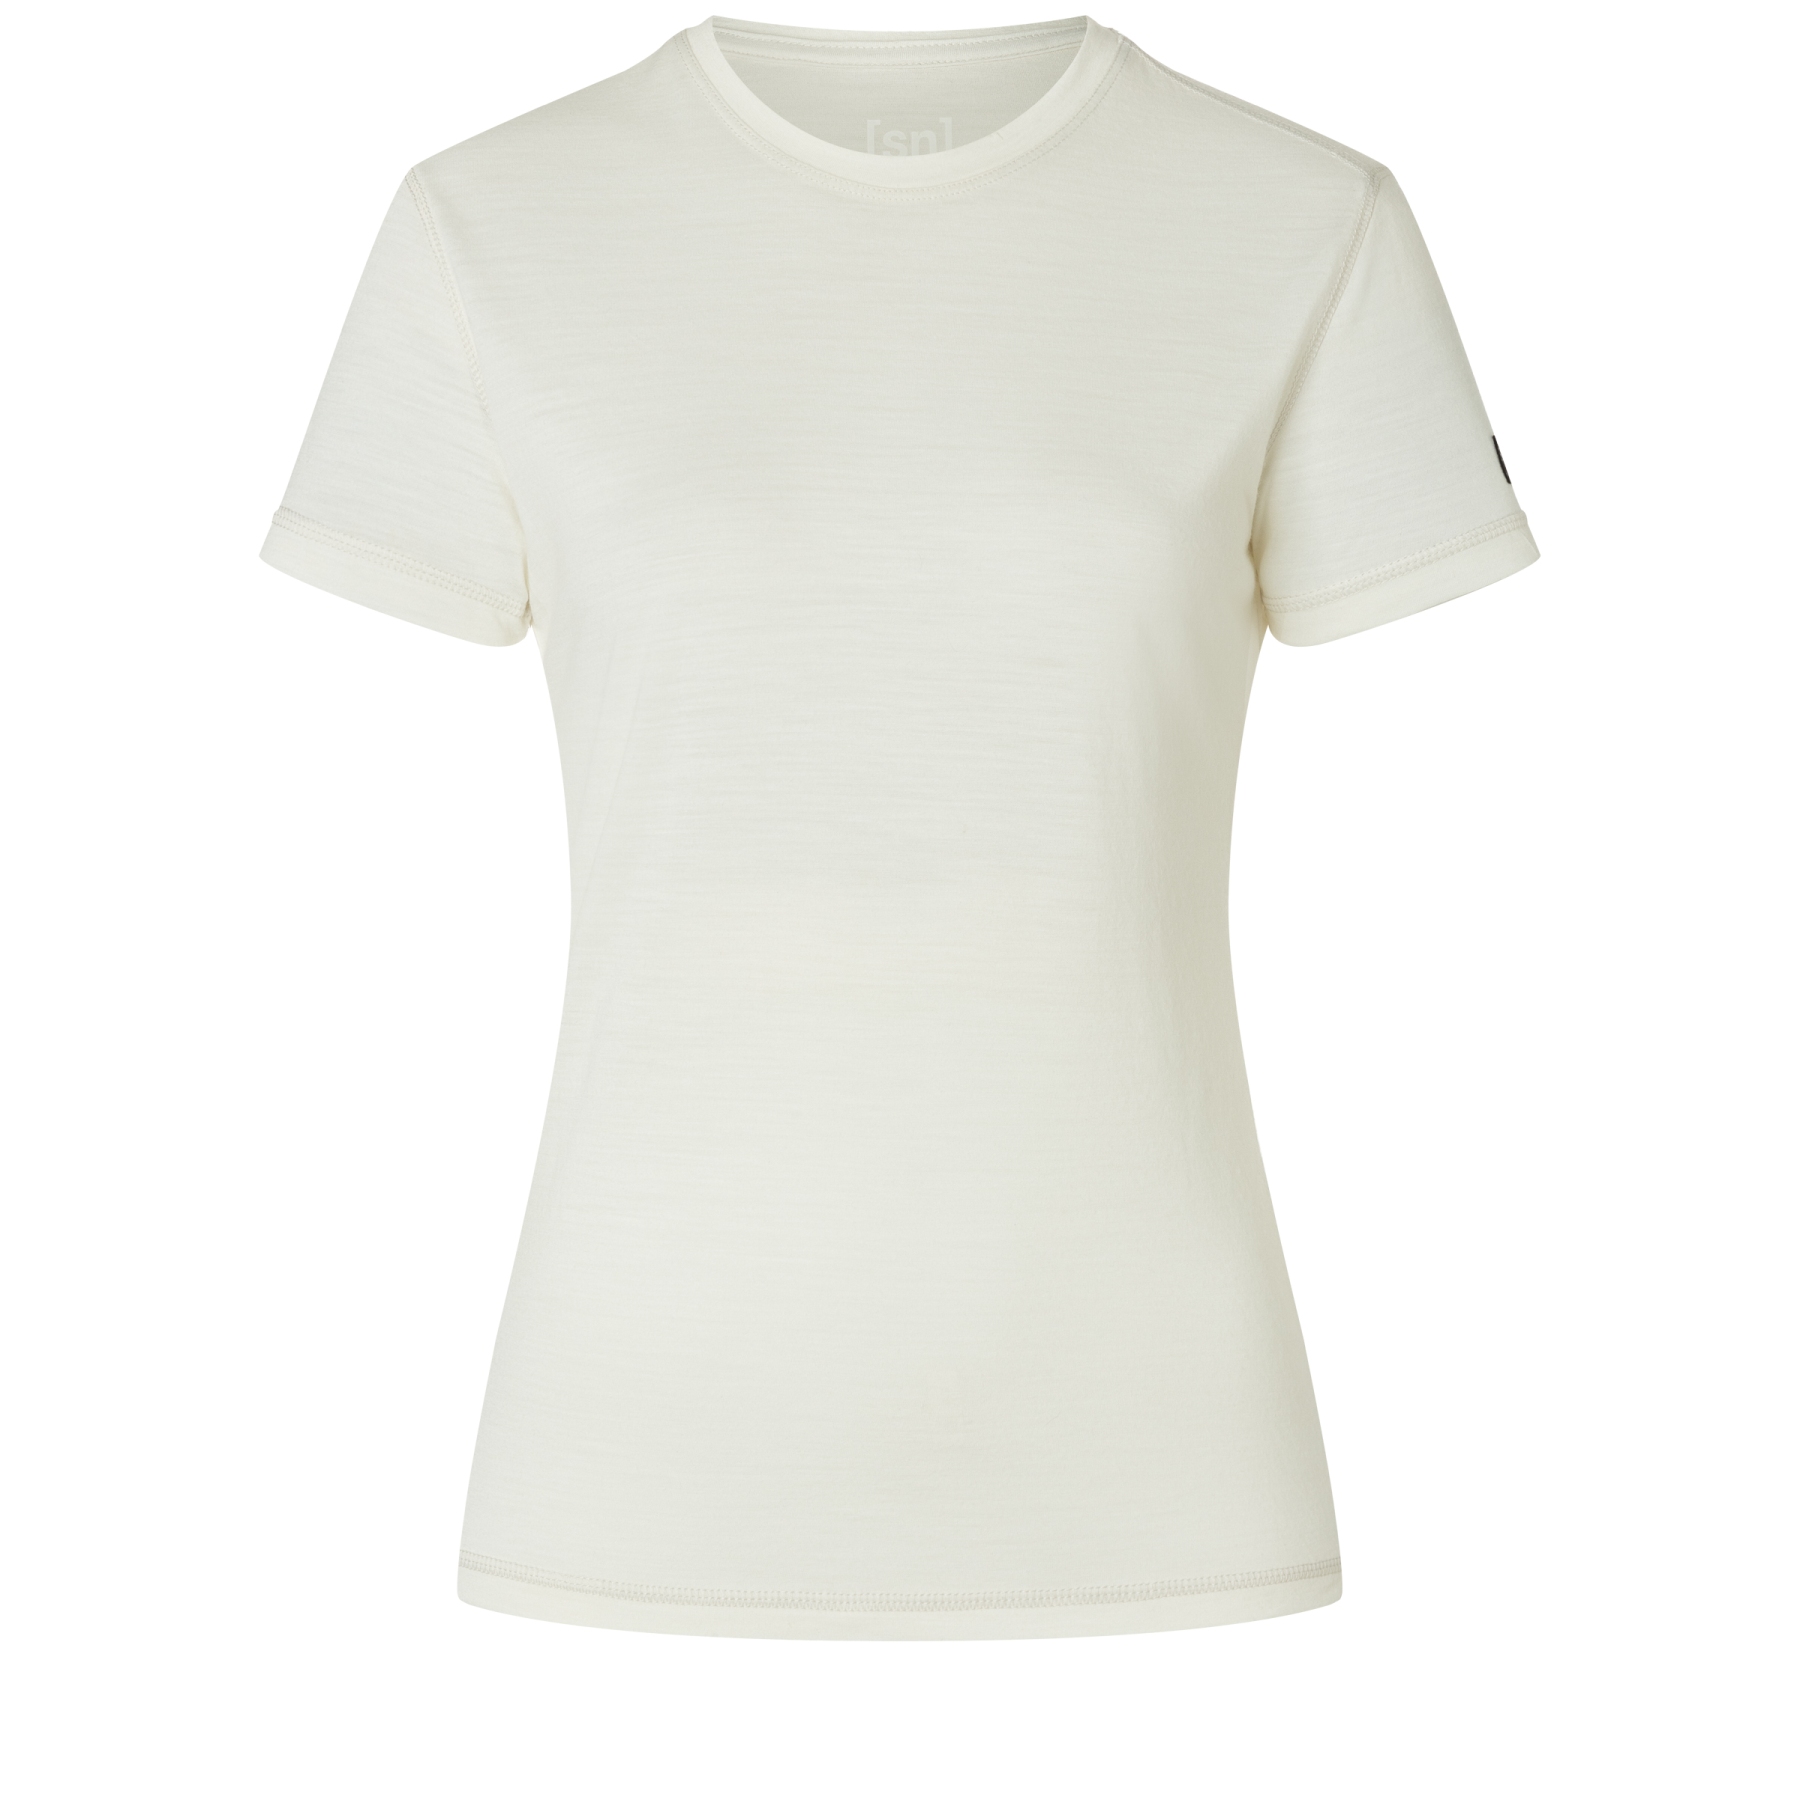 Produktbild von SUPER.NATURAL Sierra140 Kurzarm-Unterhemd Damen - Fresh White